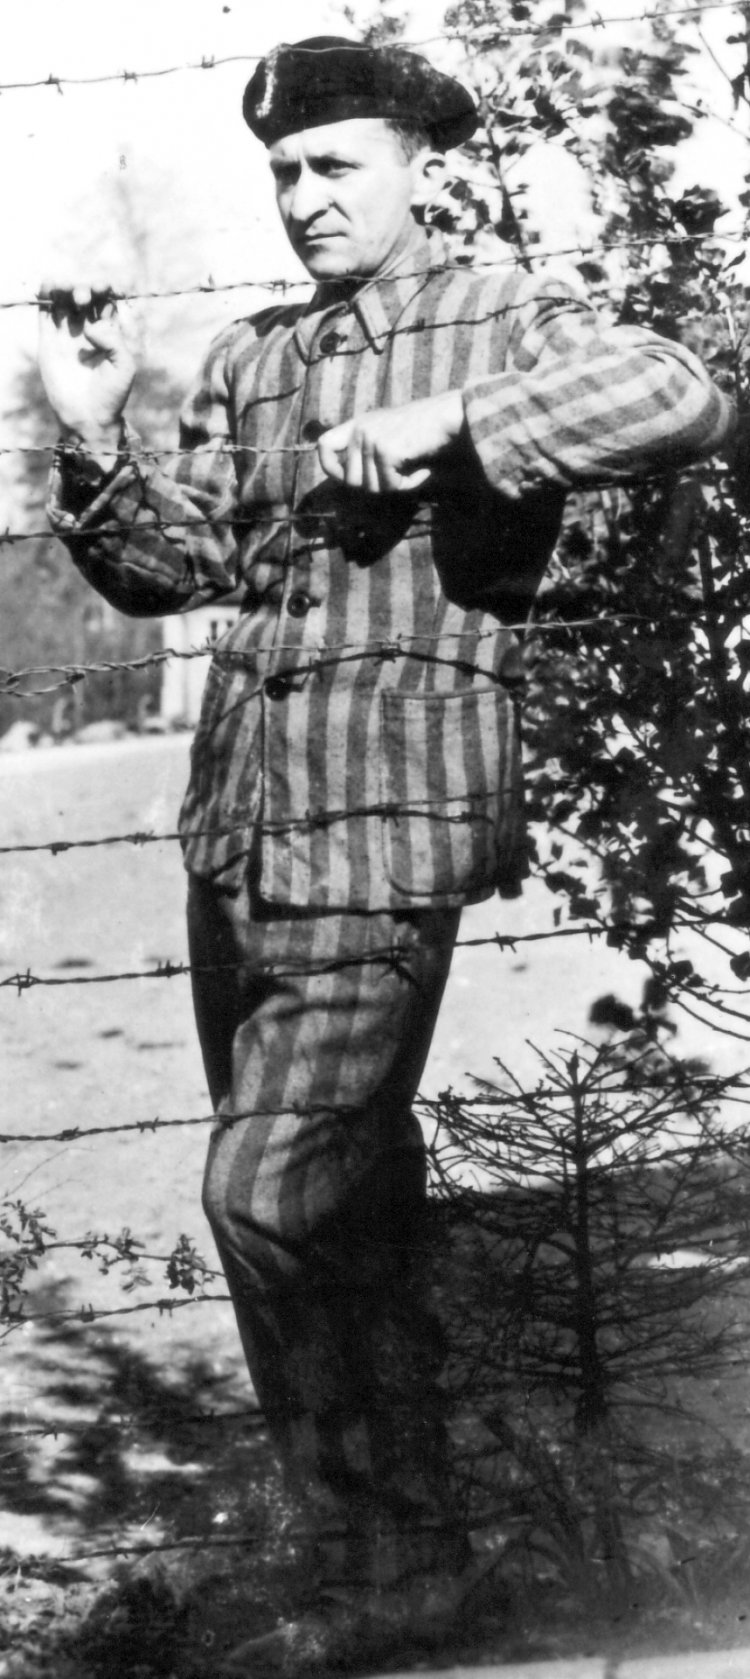 Alfred Stüber nach der Befreiung am Stacheldrahtzaun.
Heinrich Albrecht, April 1945
Privatbesitz